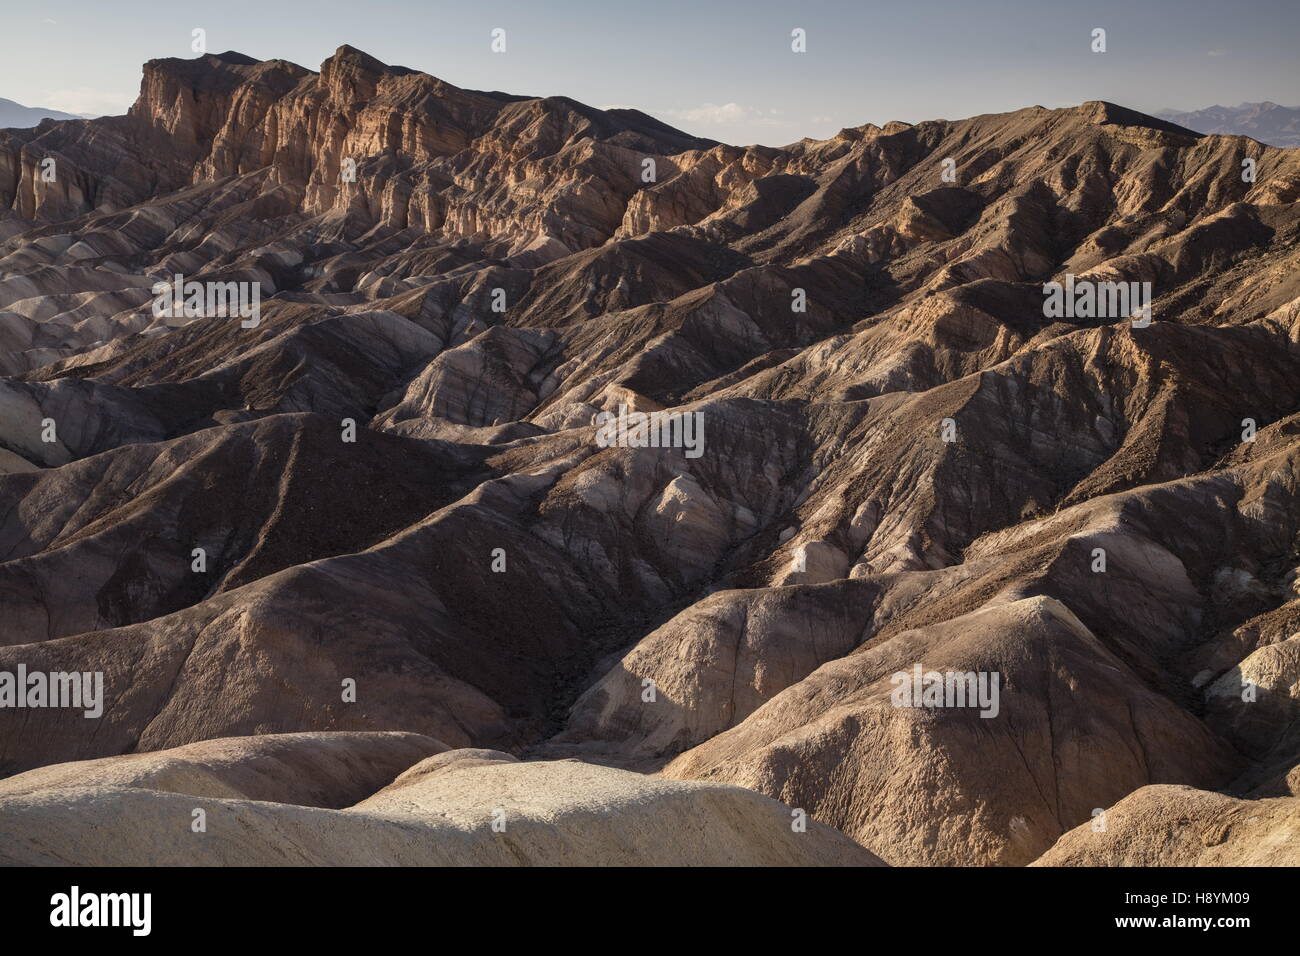 Cendres volcaniques et l'érosion des collines de Limon, badlands, à Zabriskie Point, Death Valley National Park, en Californie. Superbe exemple de sécher Banque D'Images